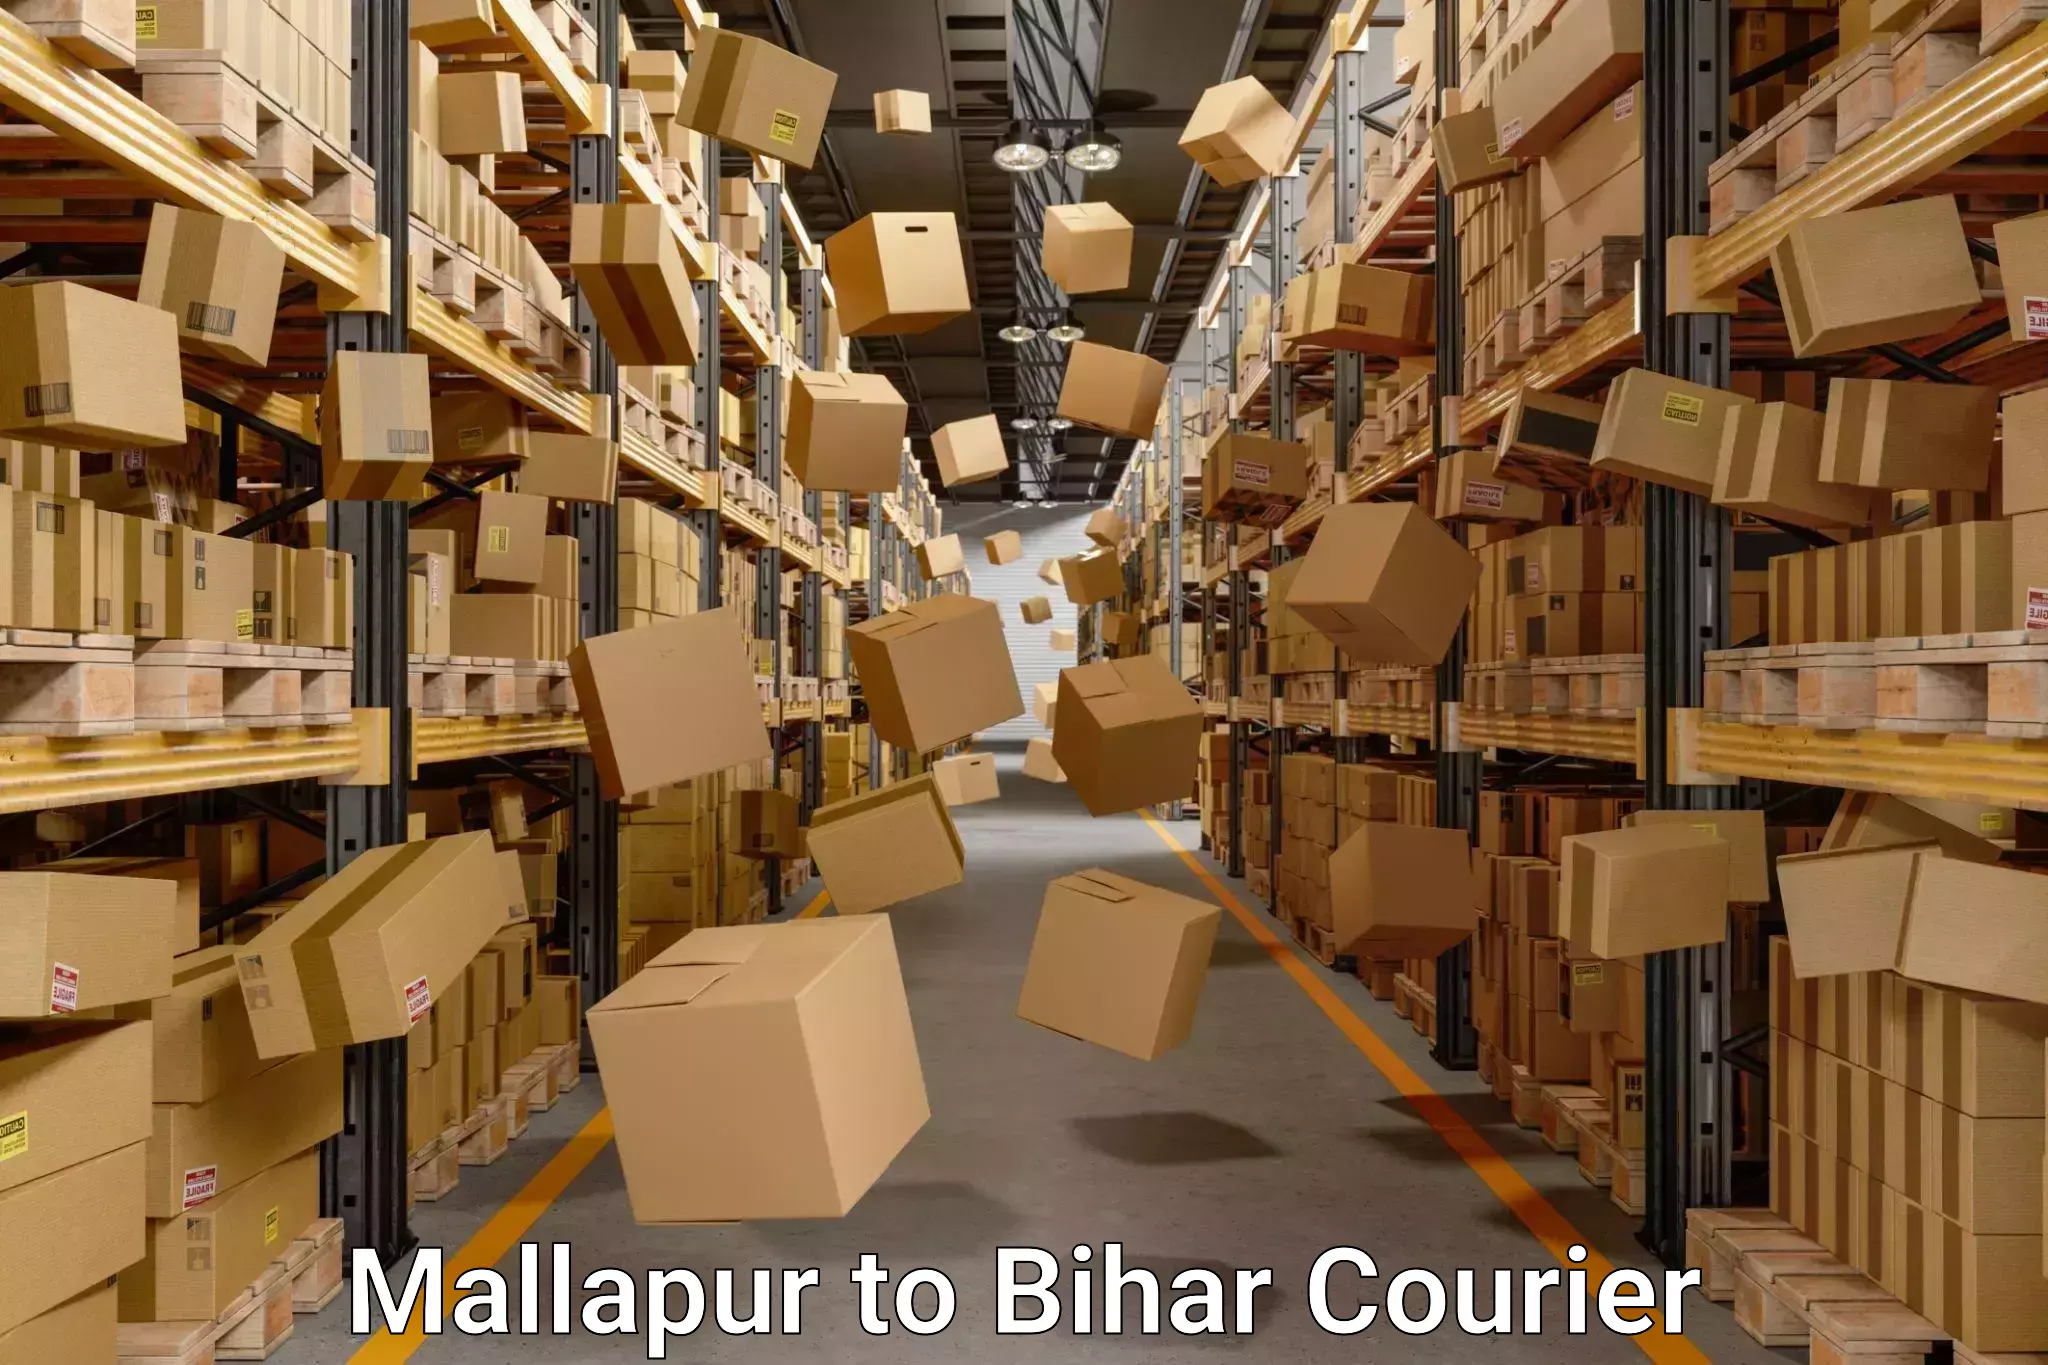 Furniture transport professionals Mallapur to Danapur